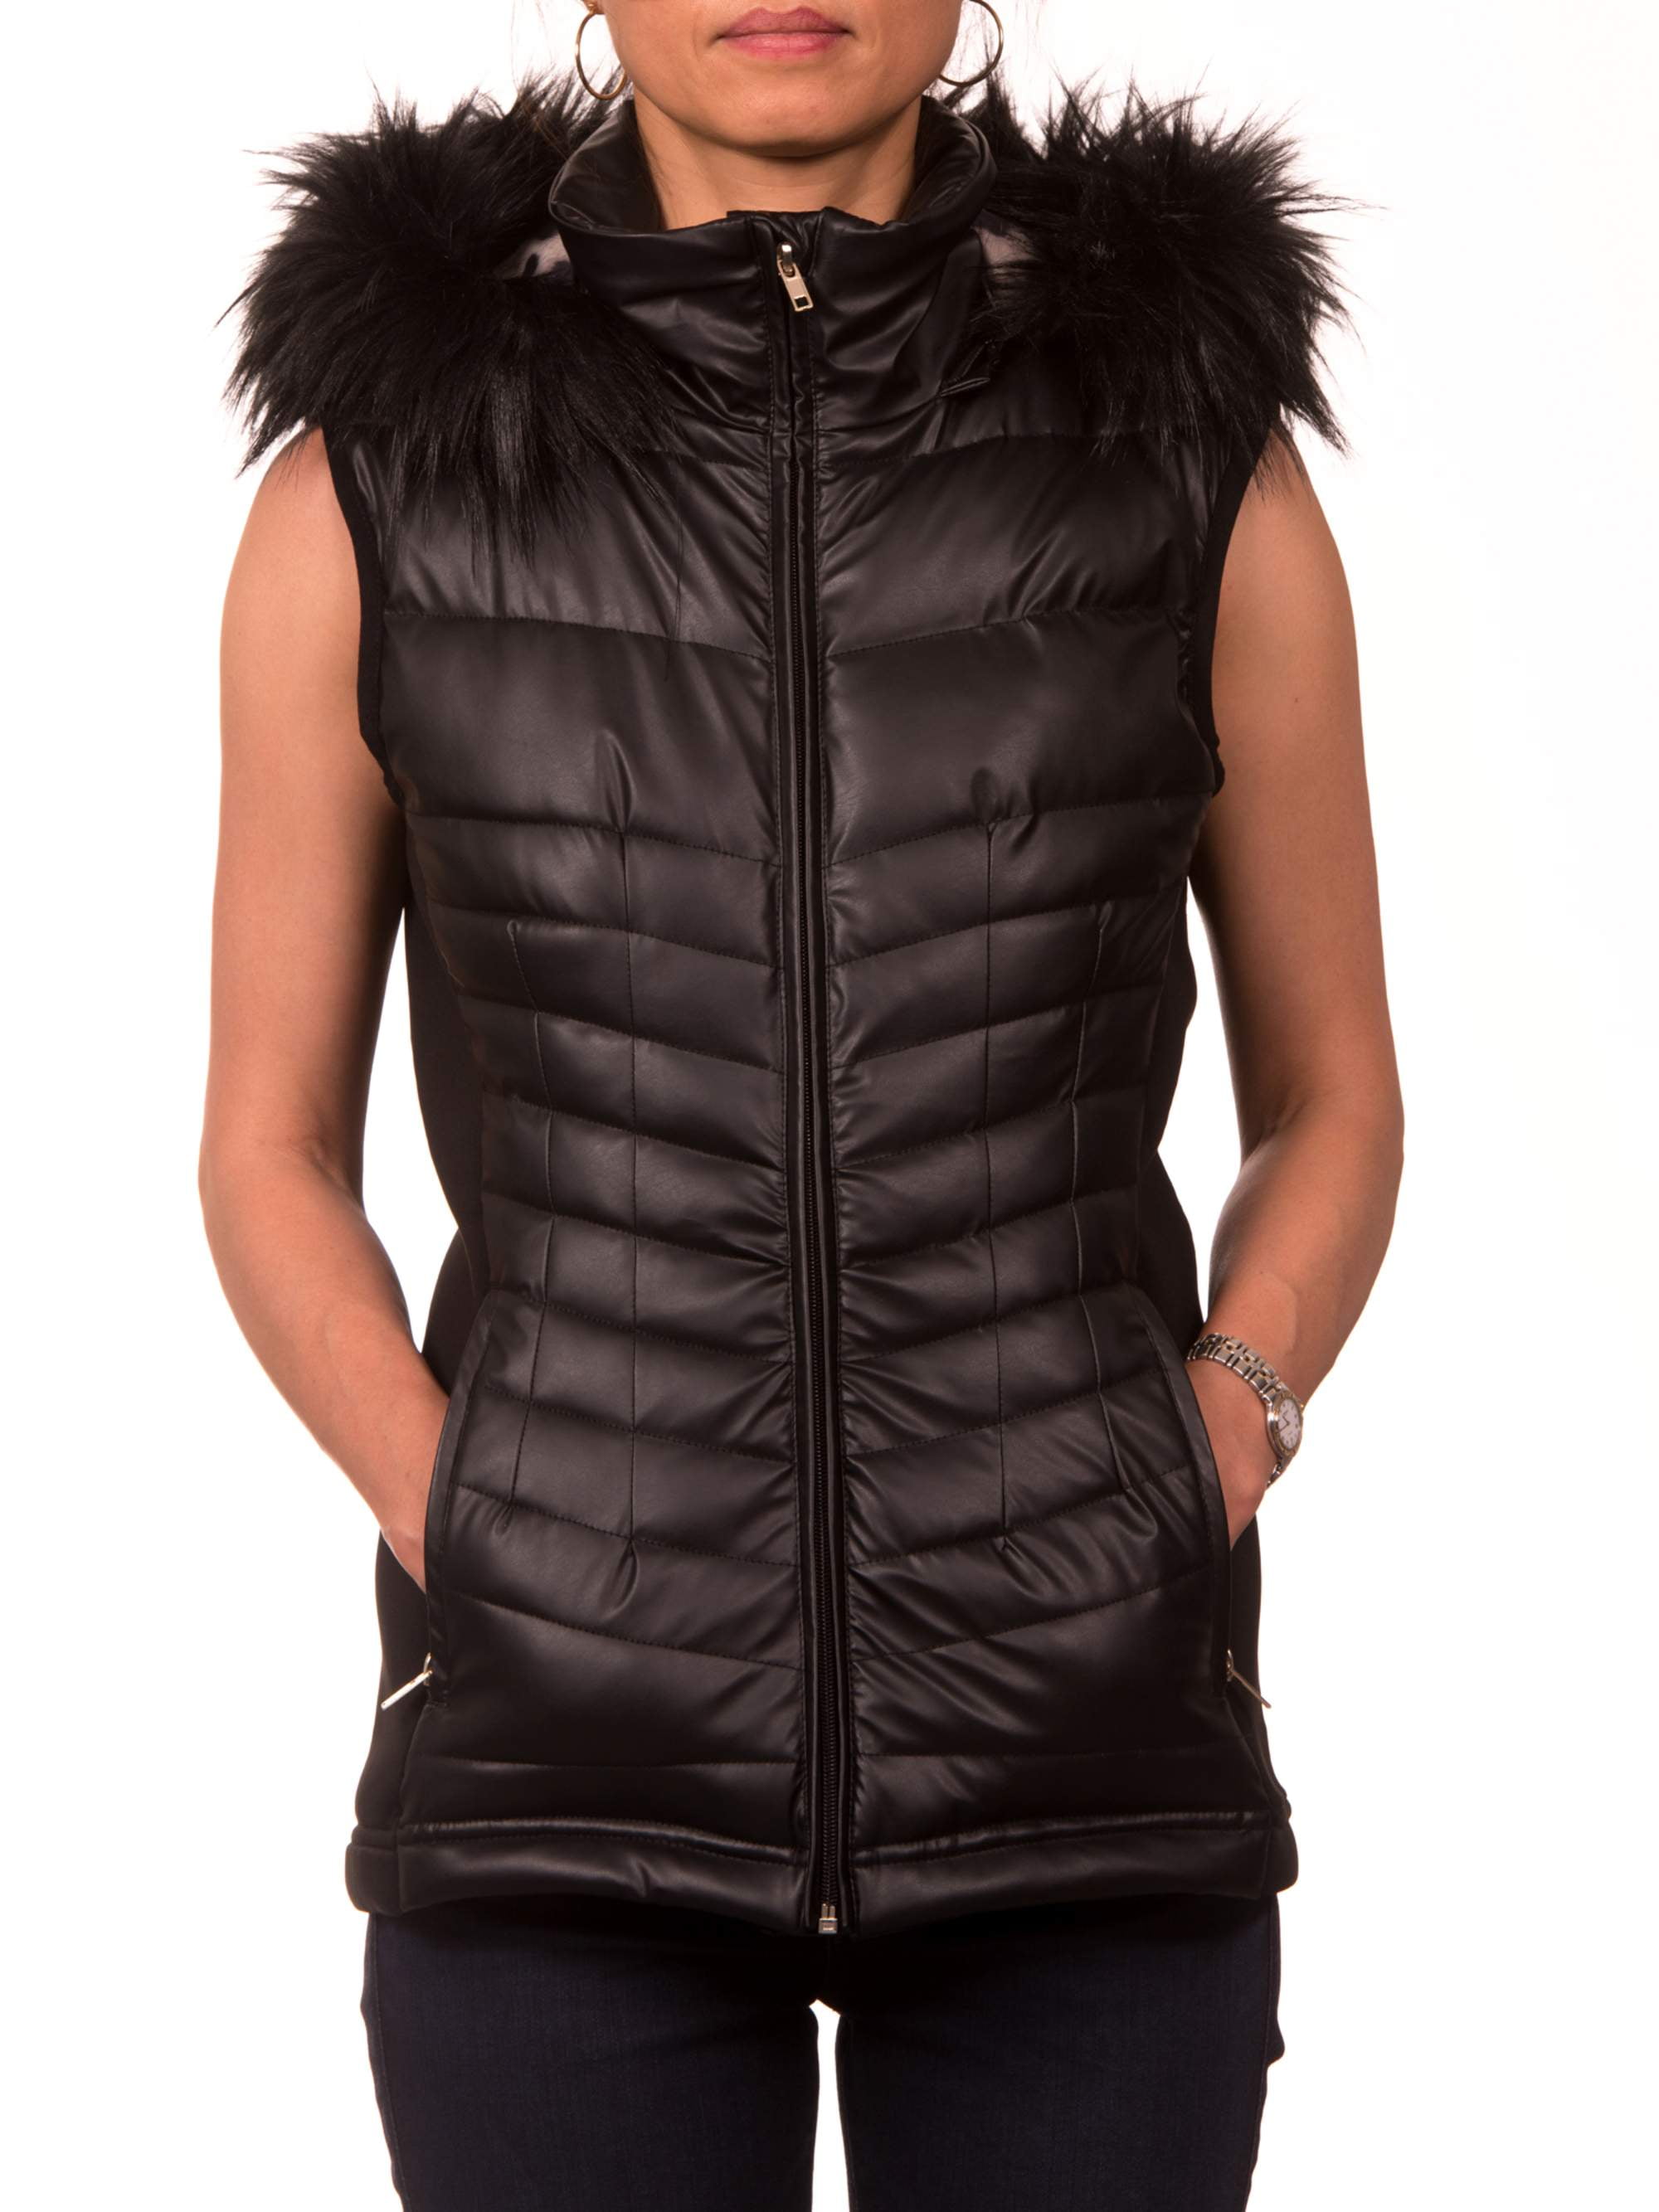 Nanette Lepore Tissue PU Vest with Detachable Faux Fur Hood - Walmart.com